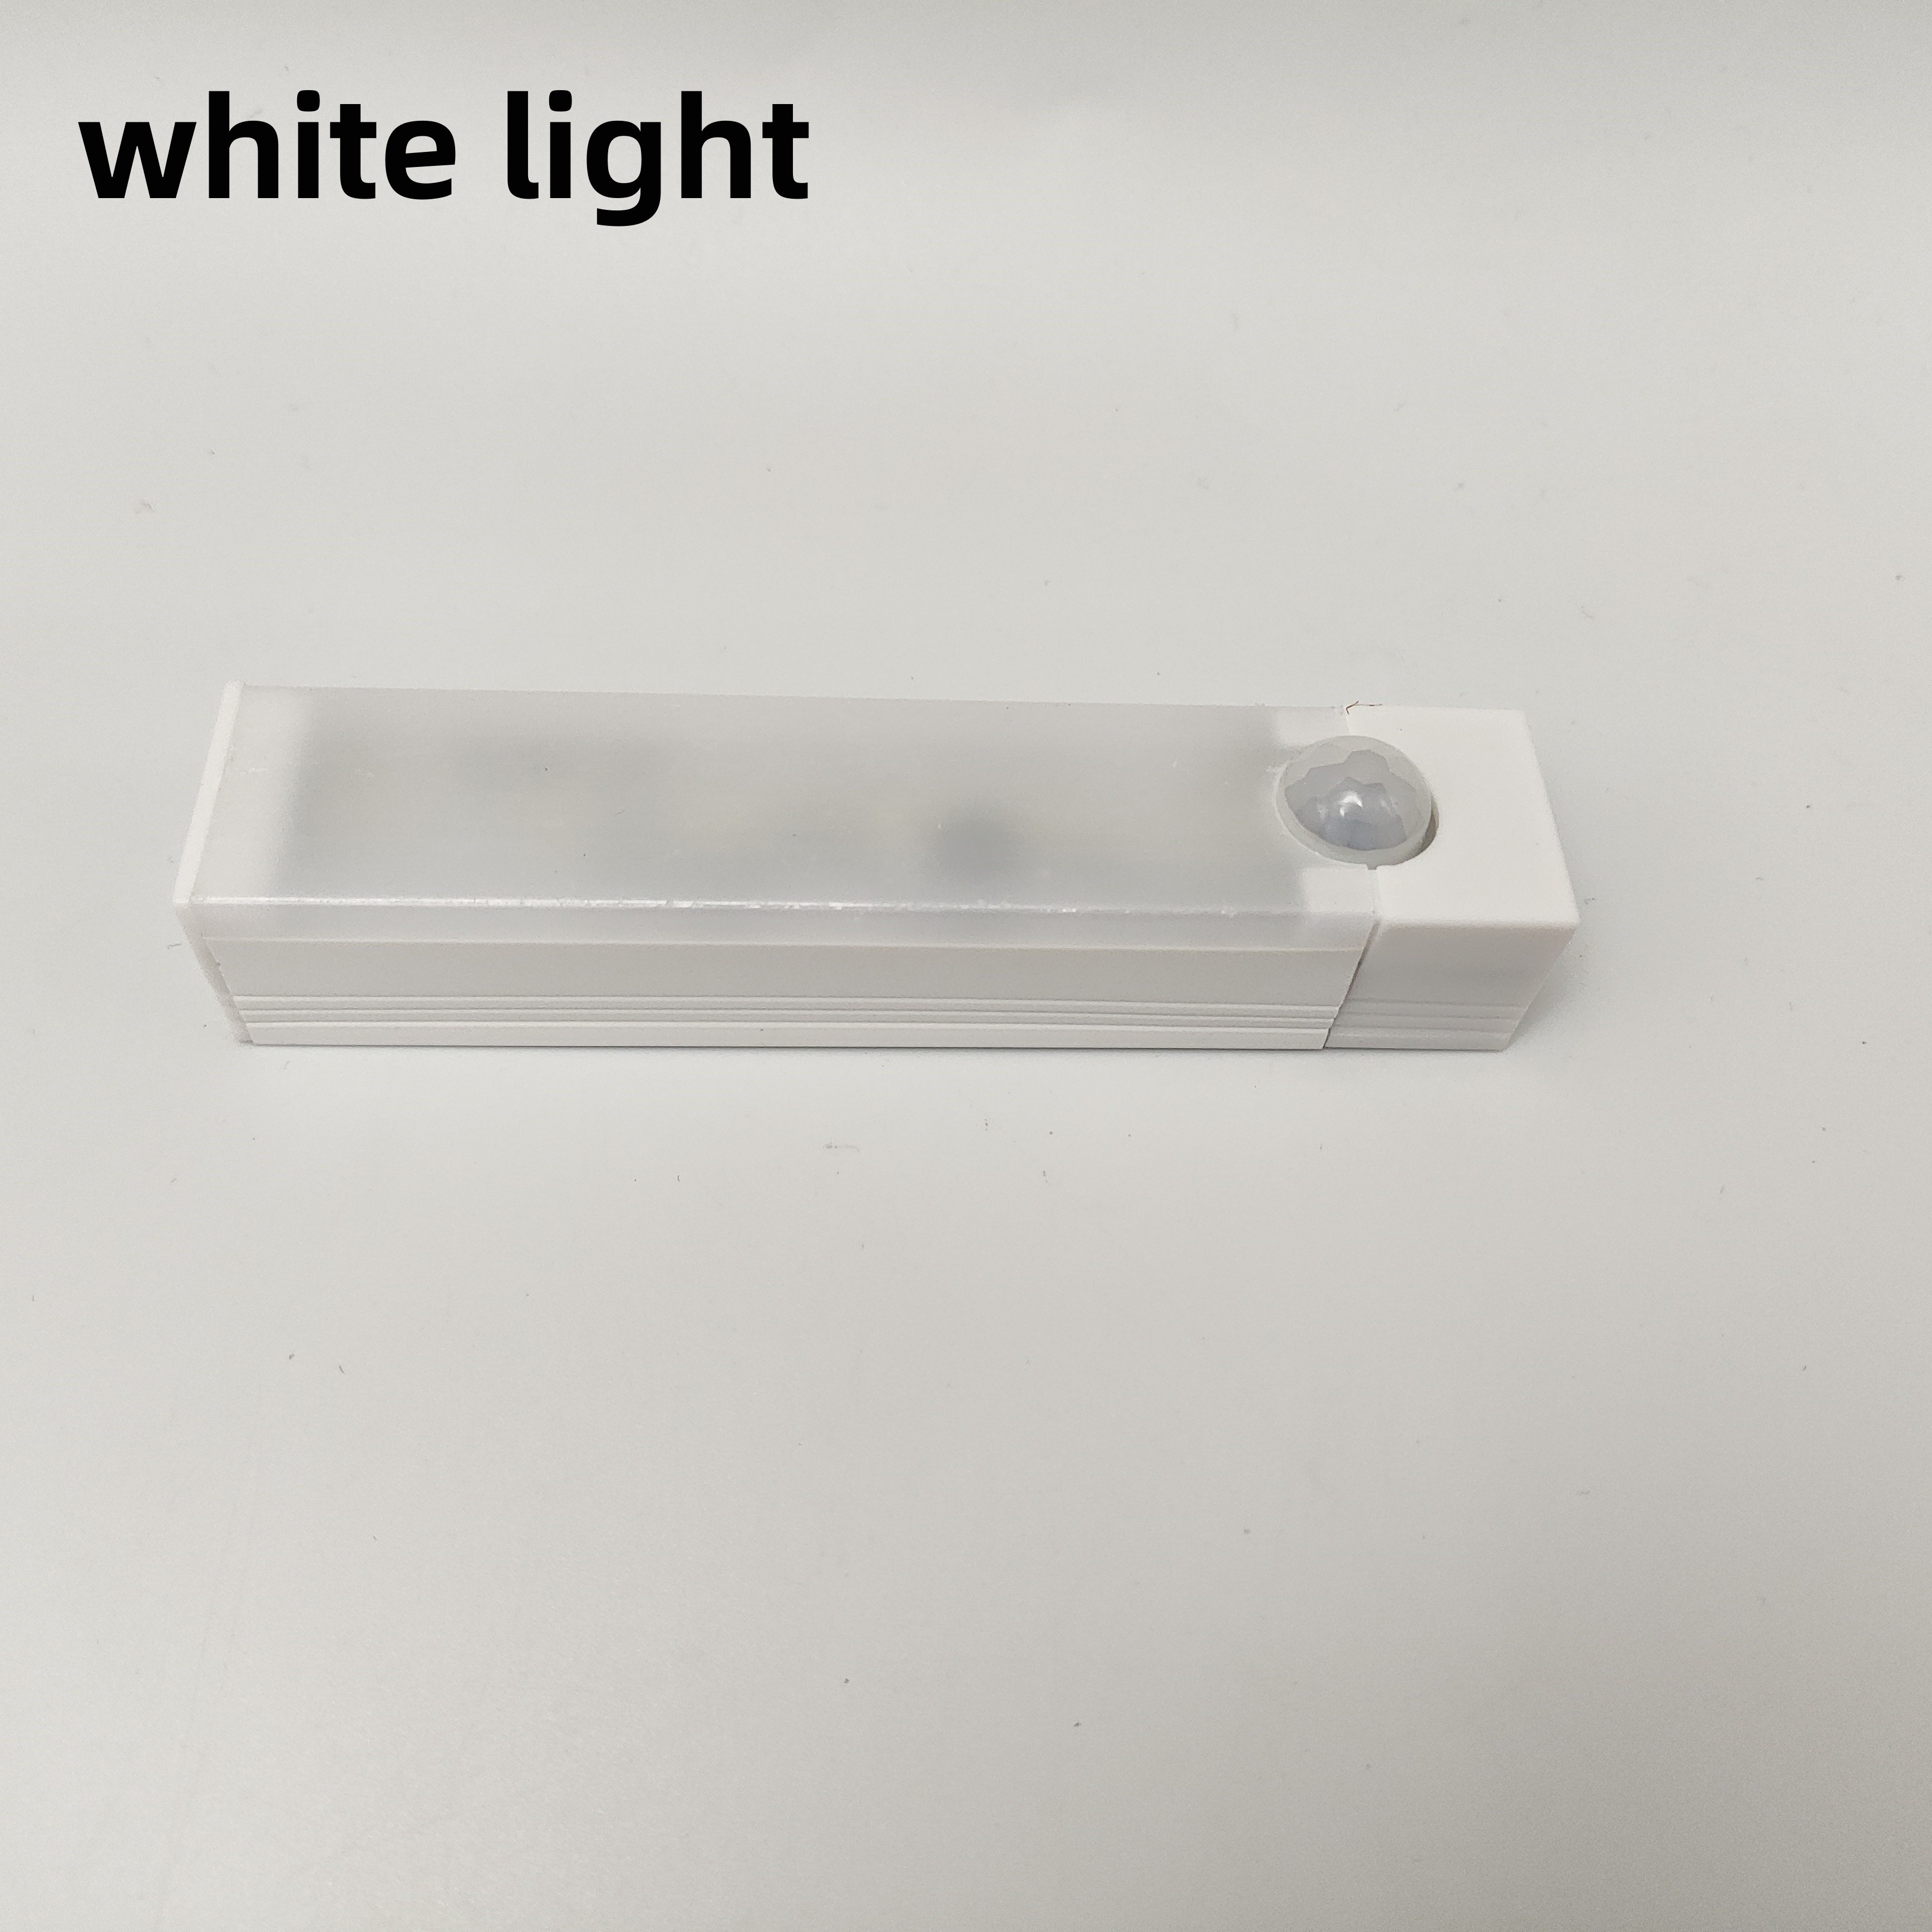 1pc Motion Sensor Light Wireless Led Night Light Magnetic